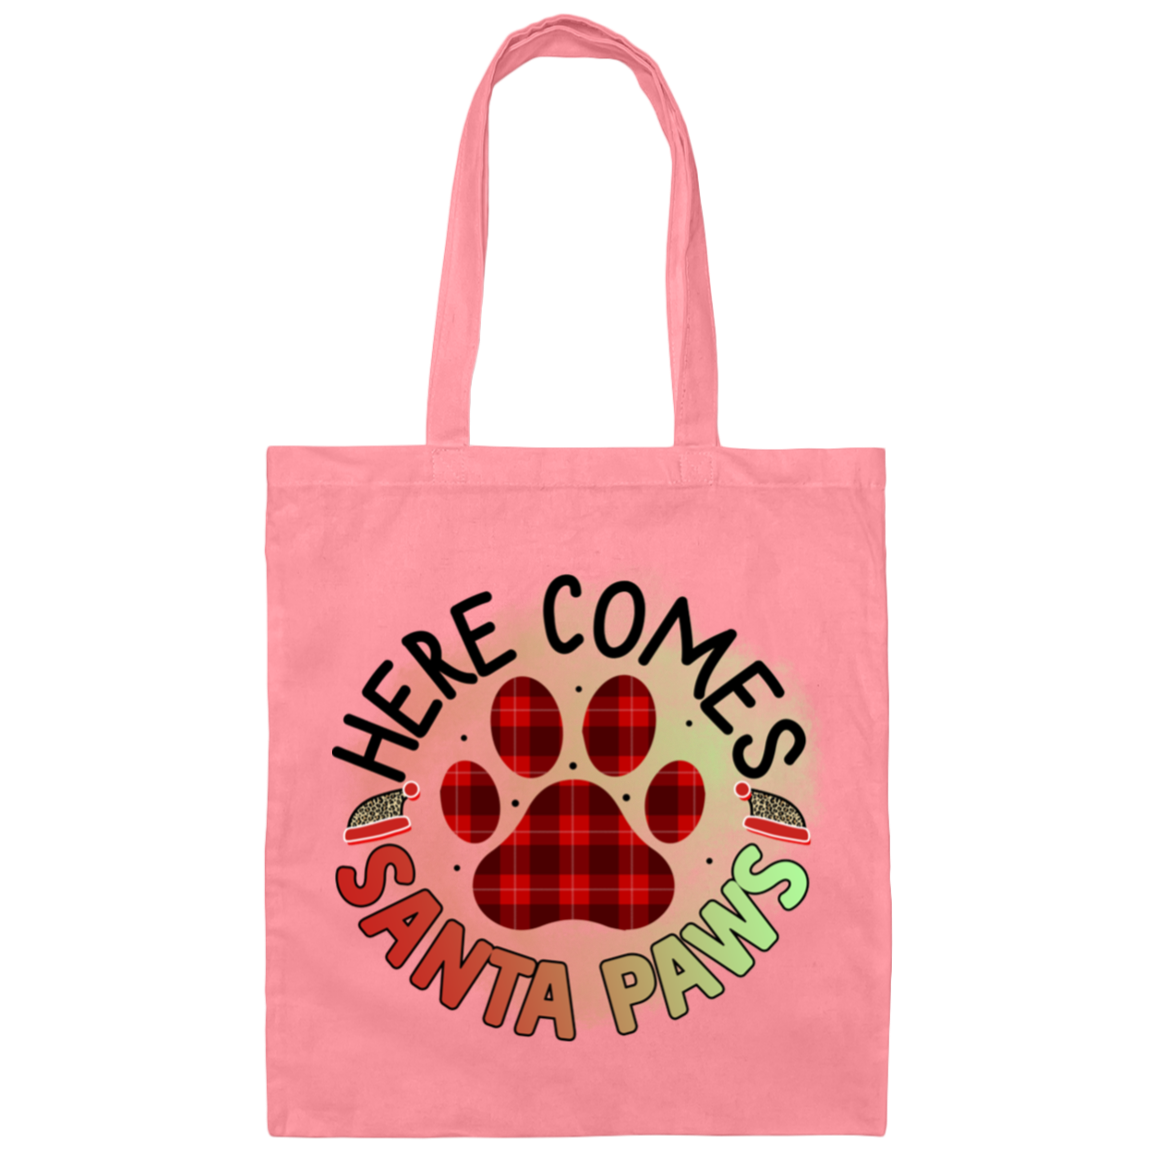 Here Comes Santa Paws Christmas Dog Canvas Tote Bag